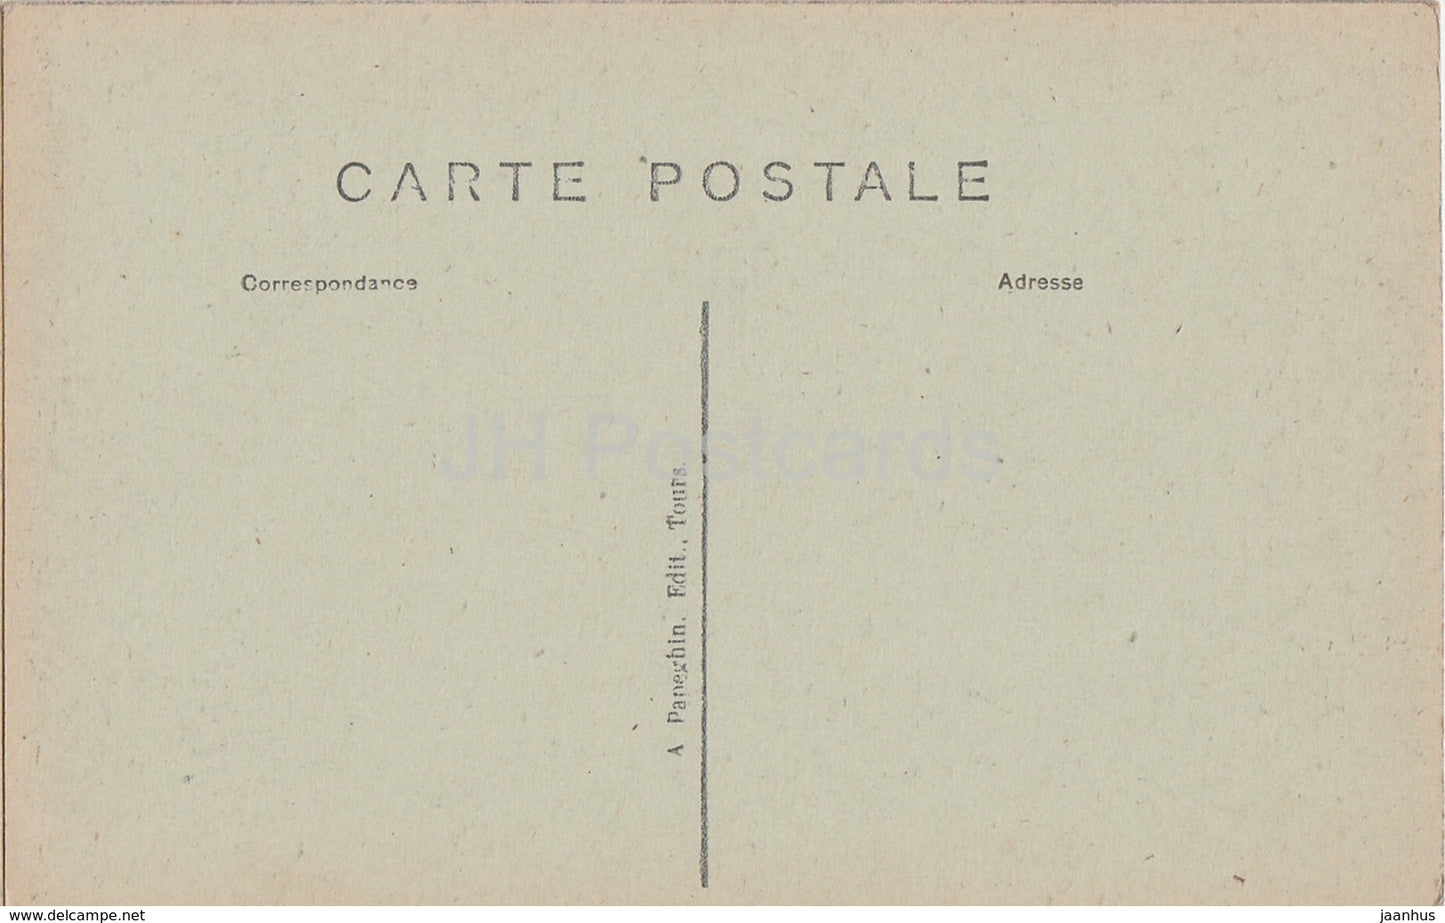 Blois - Le Chateau - Le Musee - Bibliotheque de Louis XII - Schloss - 206 - alte Postkarte - Frankreich - unbenutzt